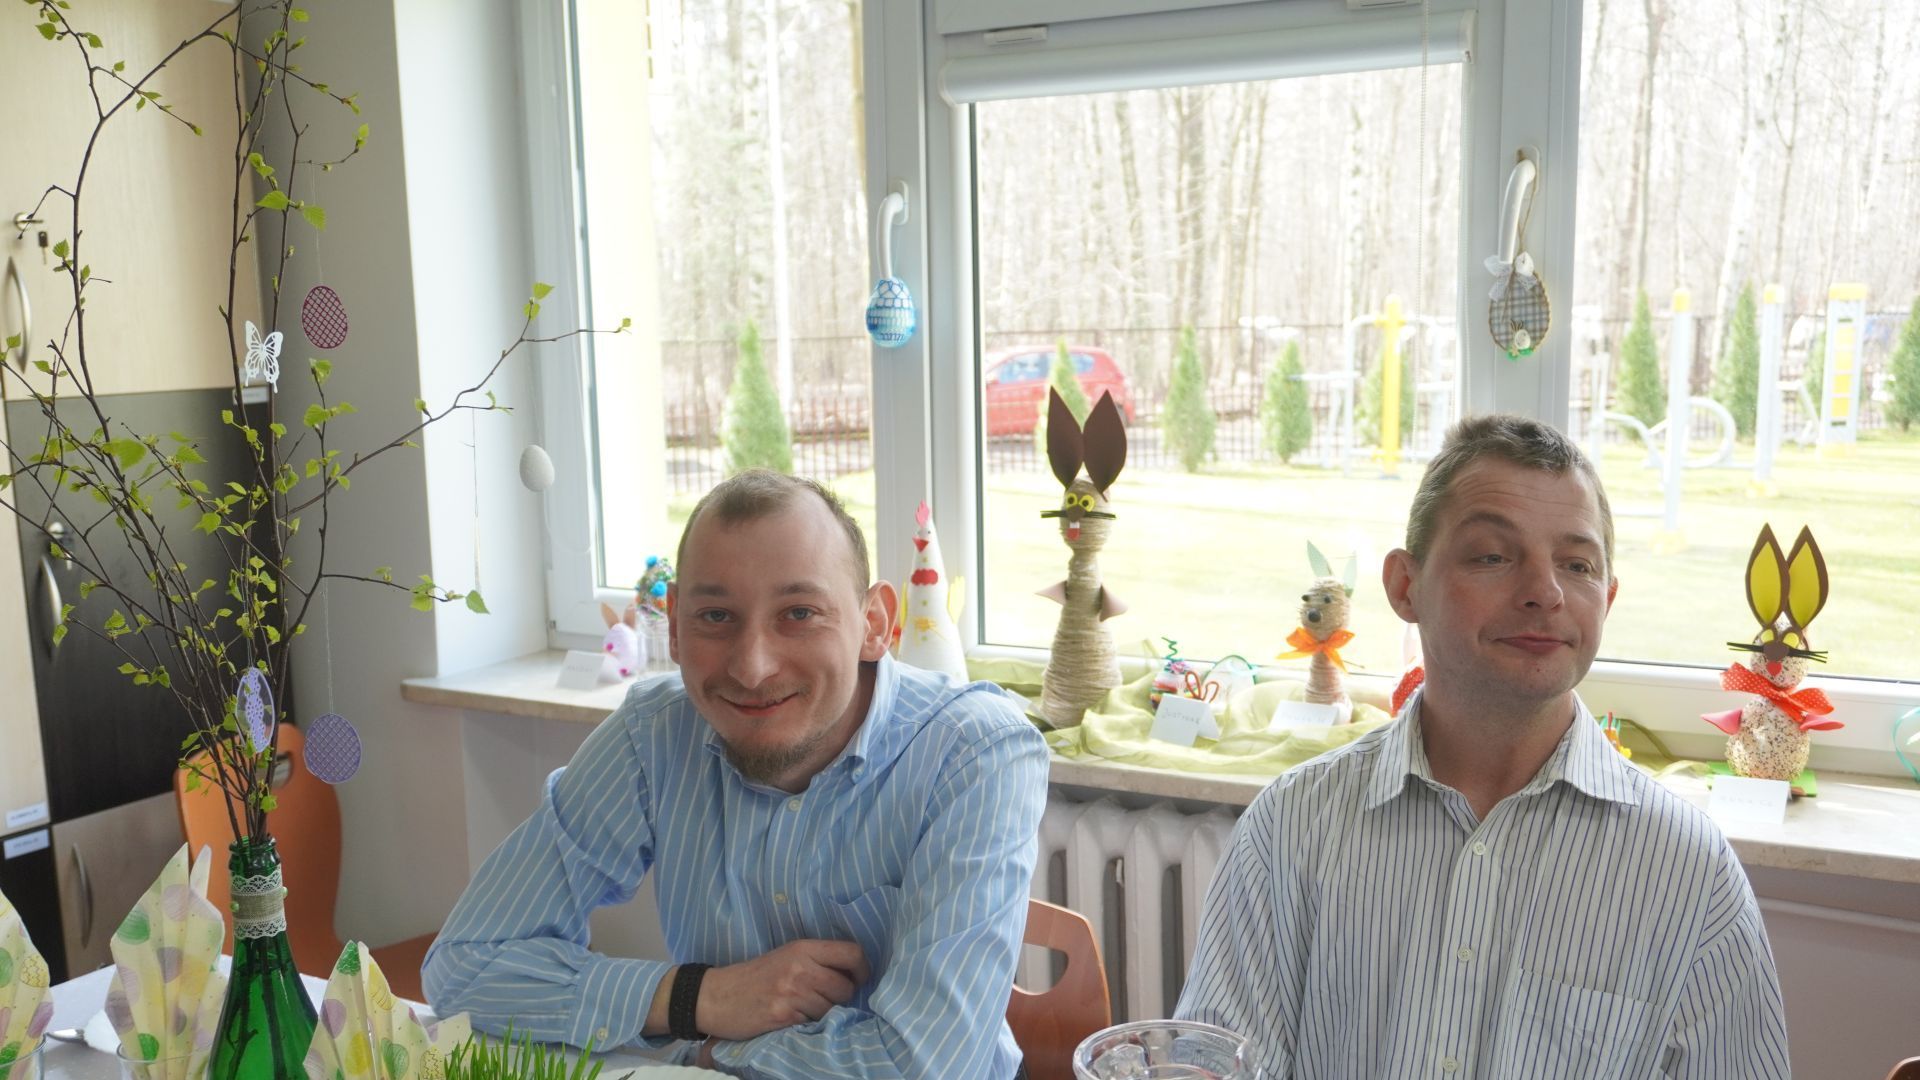 Uczestnicy Maciek i Rafał podczas spotkania wielkanocnego siedzą przy świątecznym stole. 